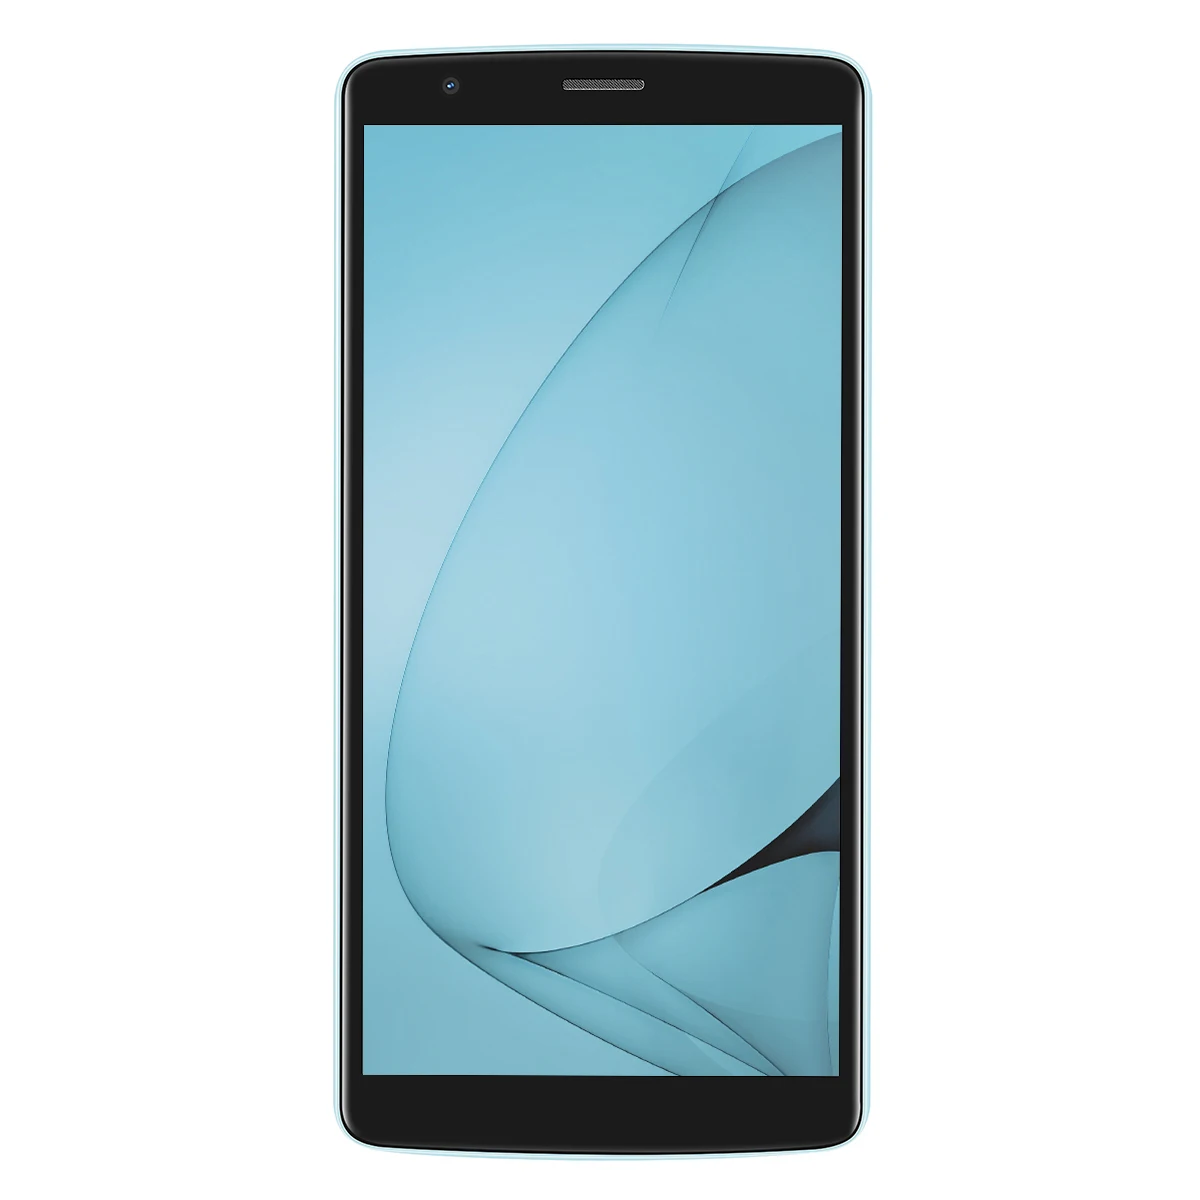 Смартфон Blackview A20 Android Go 18:9, 5,5 дюймов, двойная камера, 1 ГБ ОЗУ, 8 Гб ПЗУ, MT6580M, 5 Мп, 3G, мобильный телефон